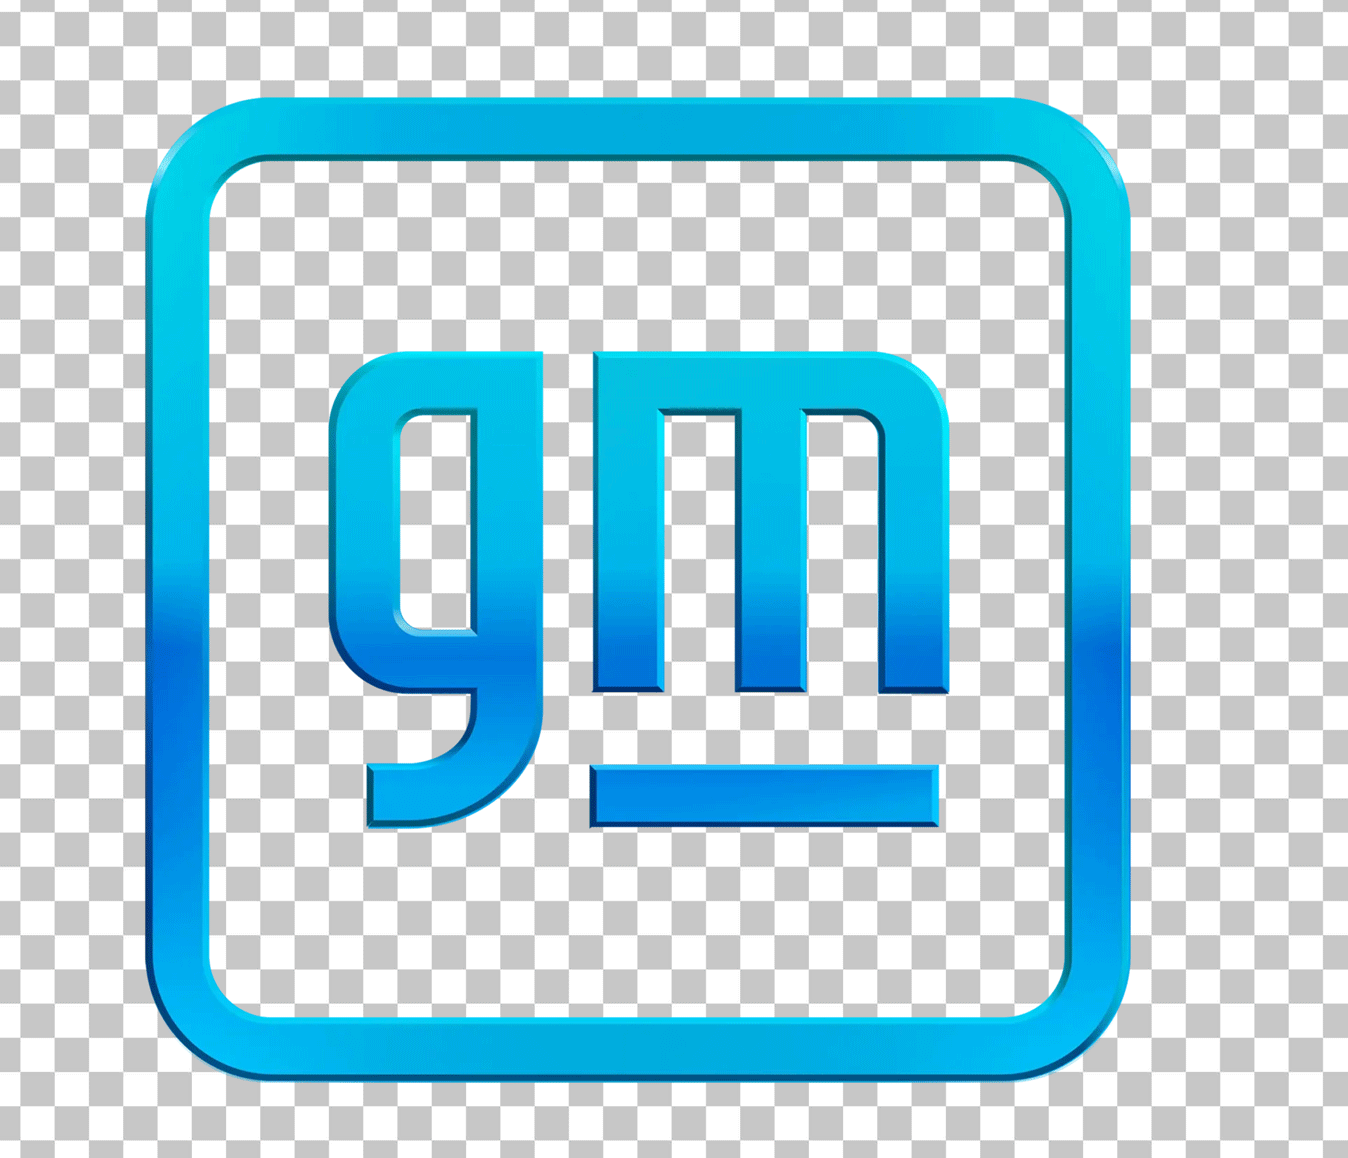 General Motors (GM) Logo PNG Image